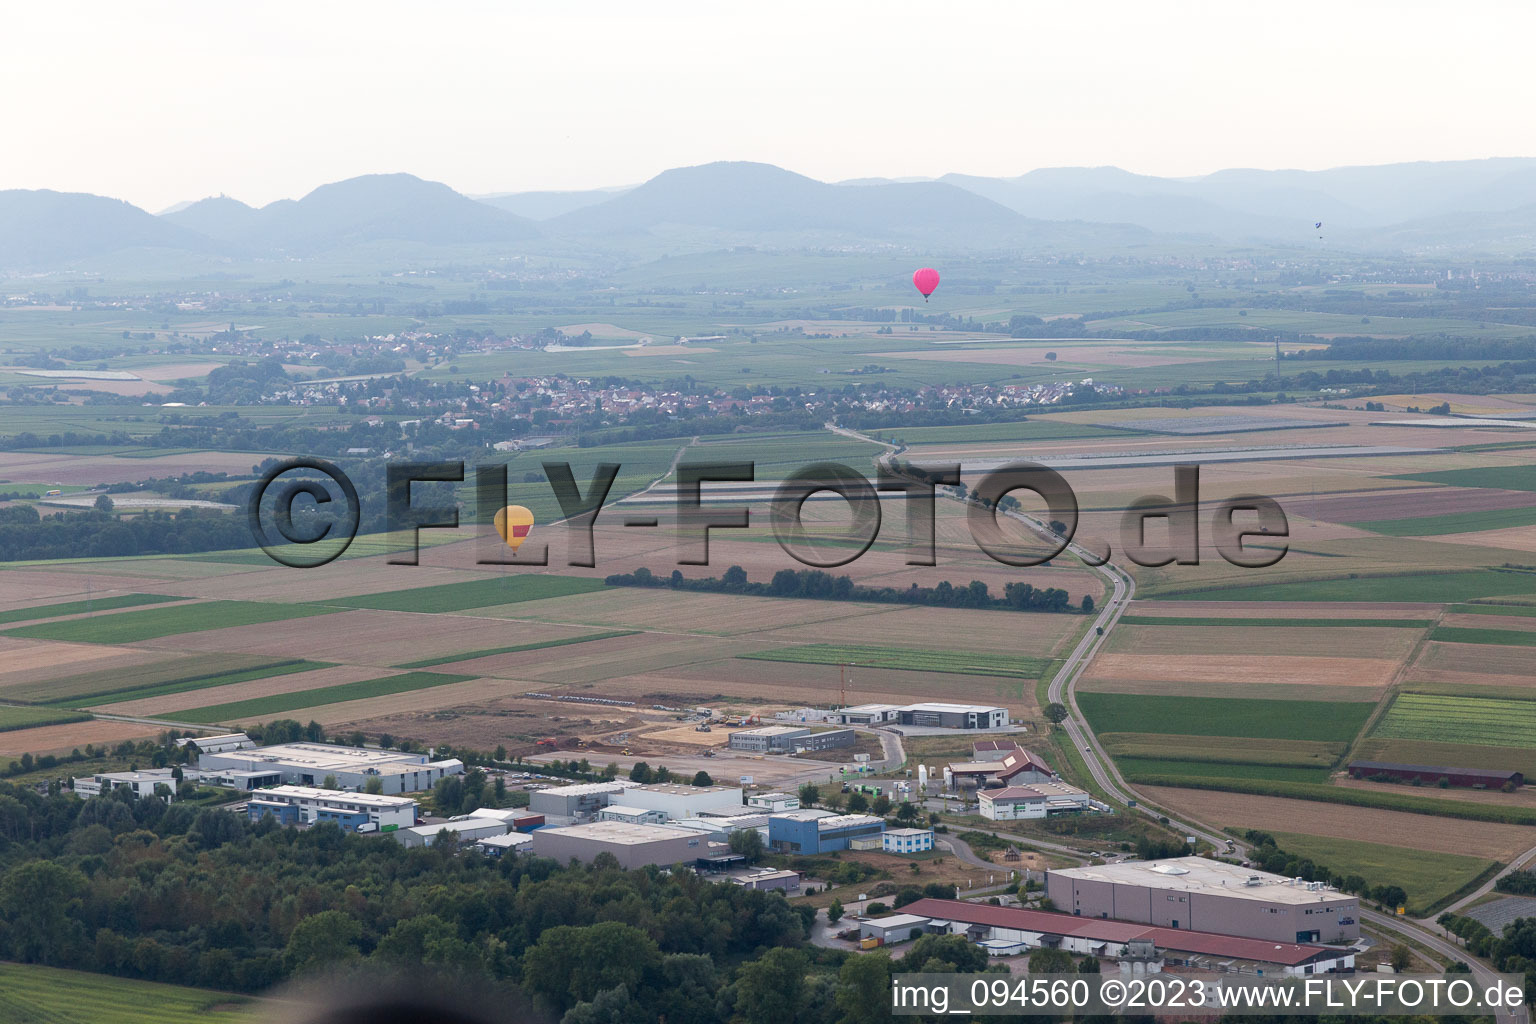 Ortsteil Herxheim in Herxheim bei Landau/Pfalz im Bundesland Rheinland-Pfalz, Deutschland von der Drohne aus gesehen